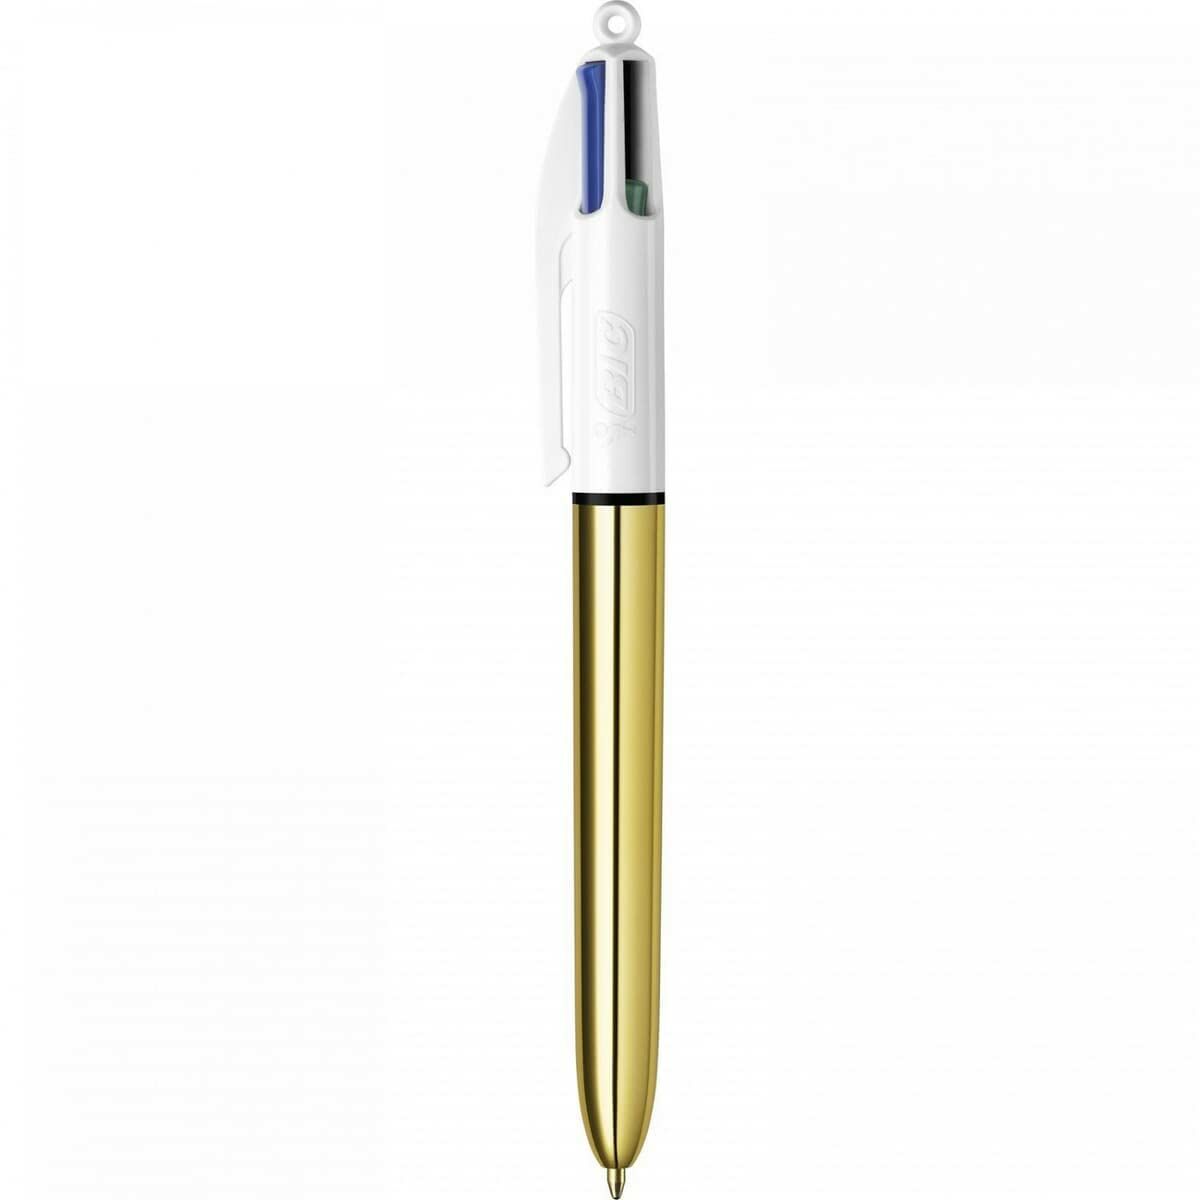 Penna för flytande bläck Bic 999453 1 mm (2 antal)-Kontor och Kontorsmaterial, Kulspetspennor, pennor och skrivverktyg-Bic-peaceofhome.se